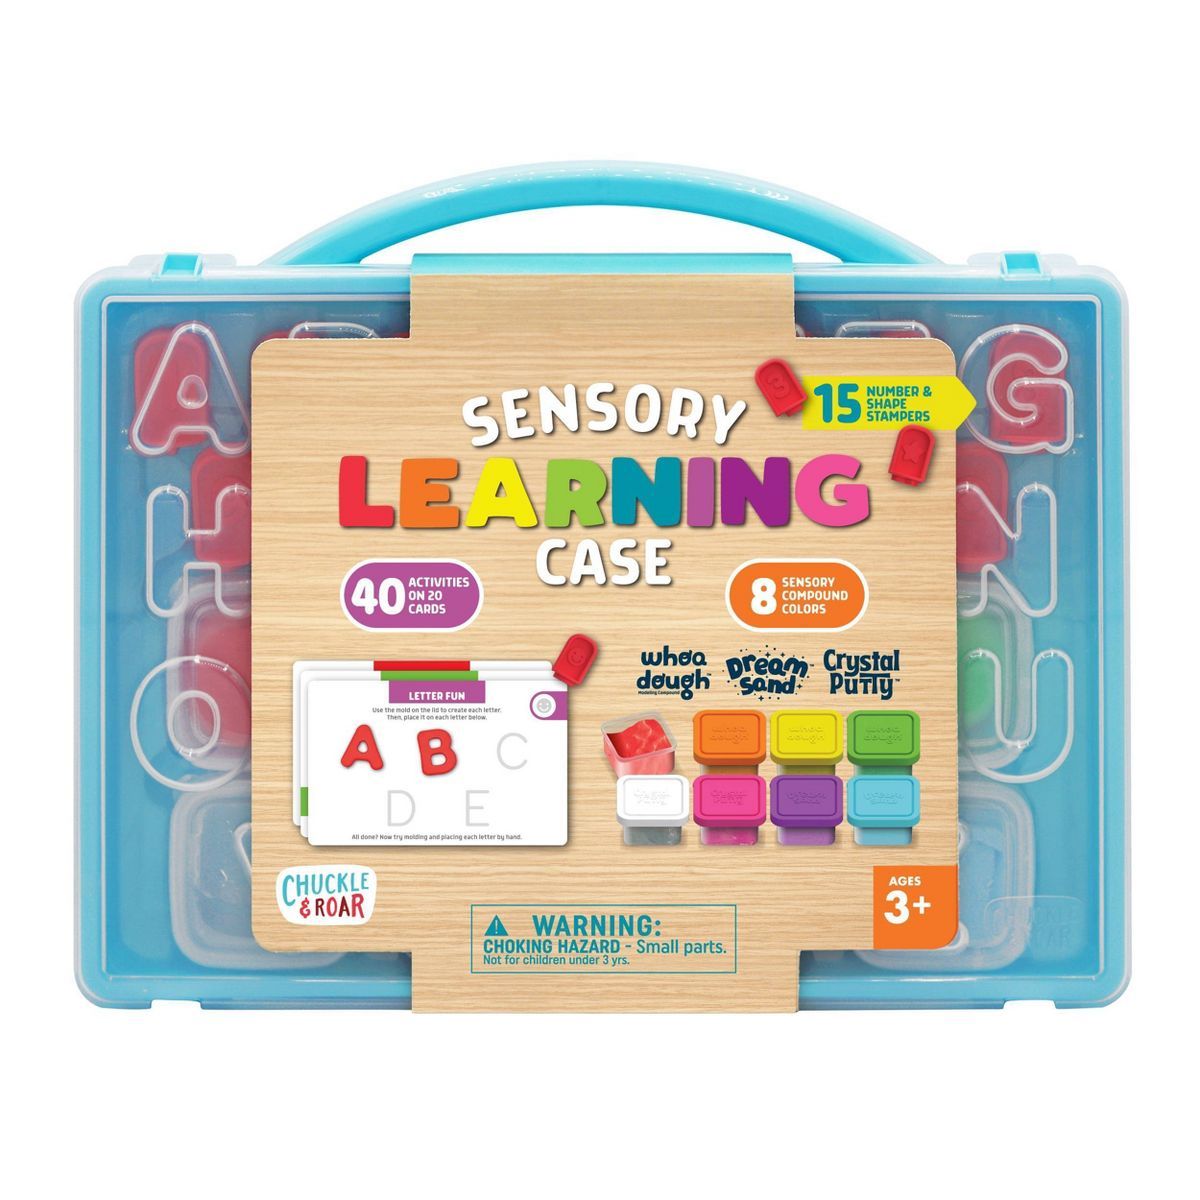 Chuckle & Roar Sensory Learning Case | Target